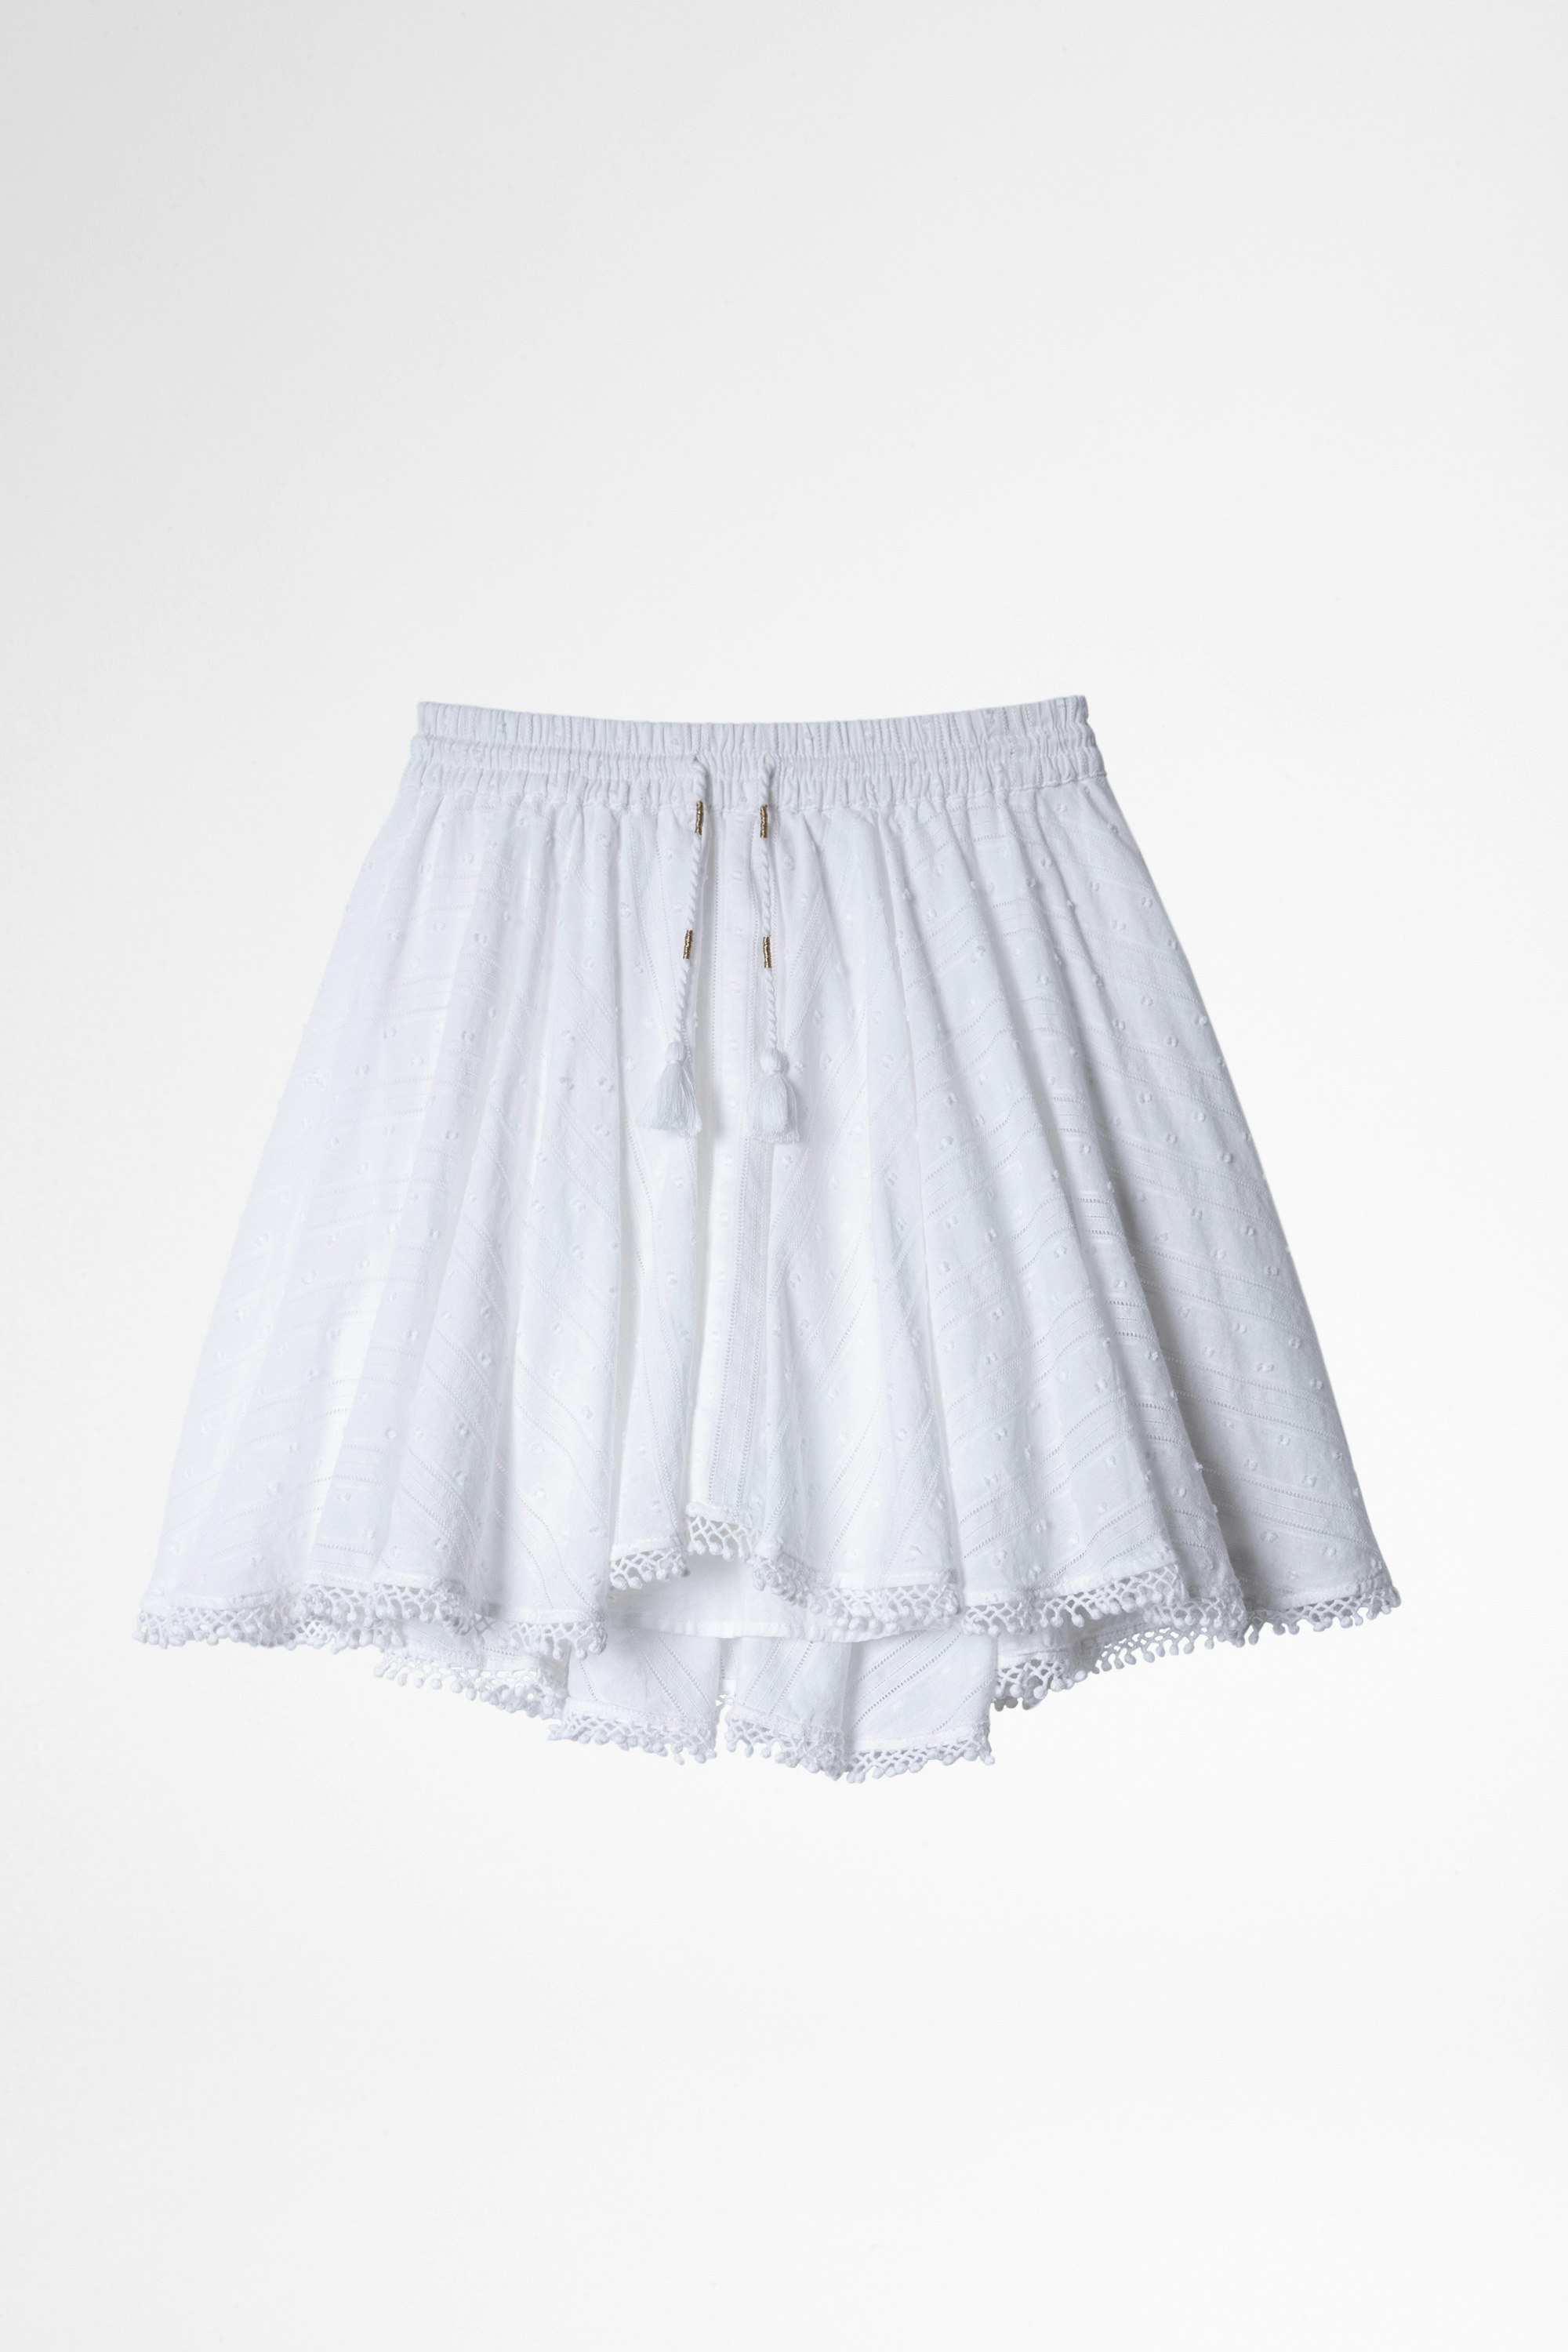 Sophie Children's Skirt Children's short cotton skirt in white